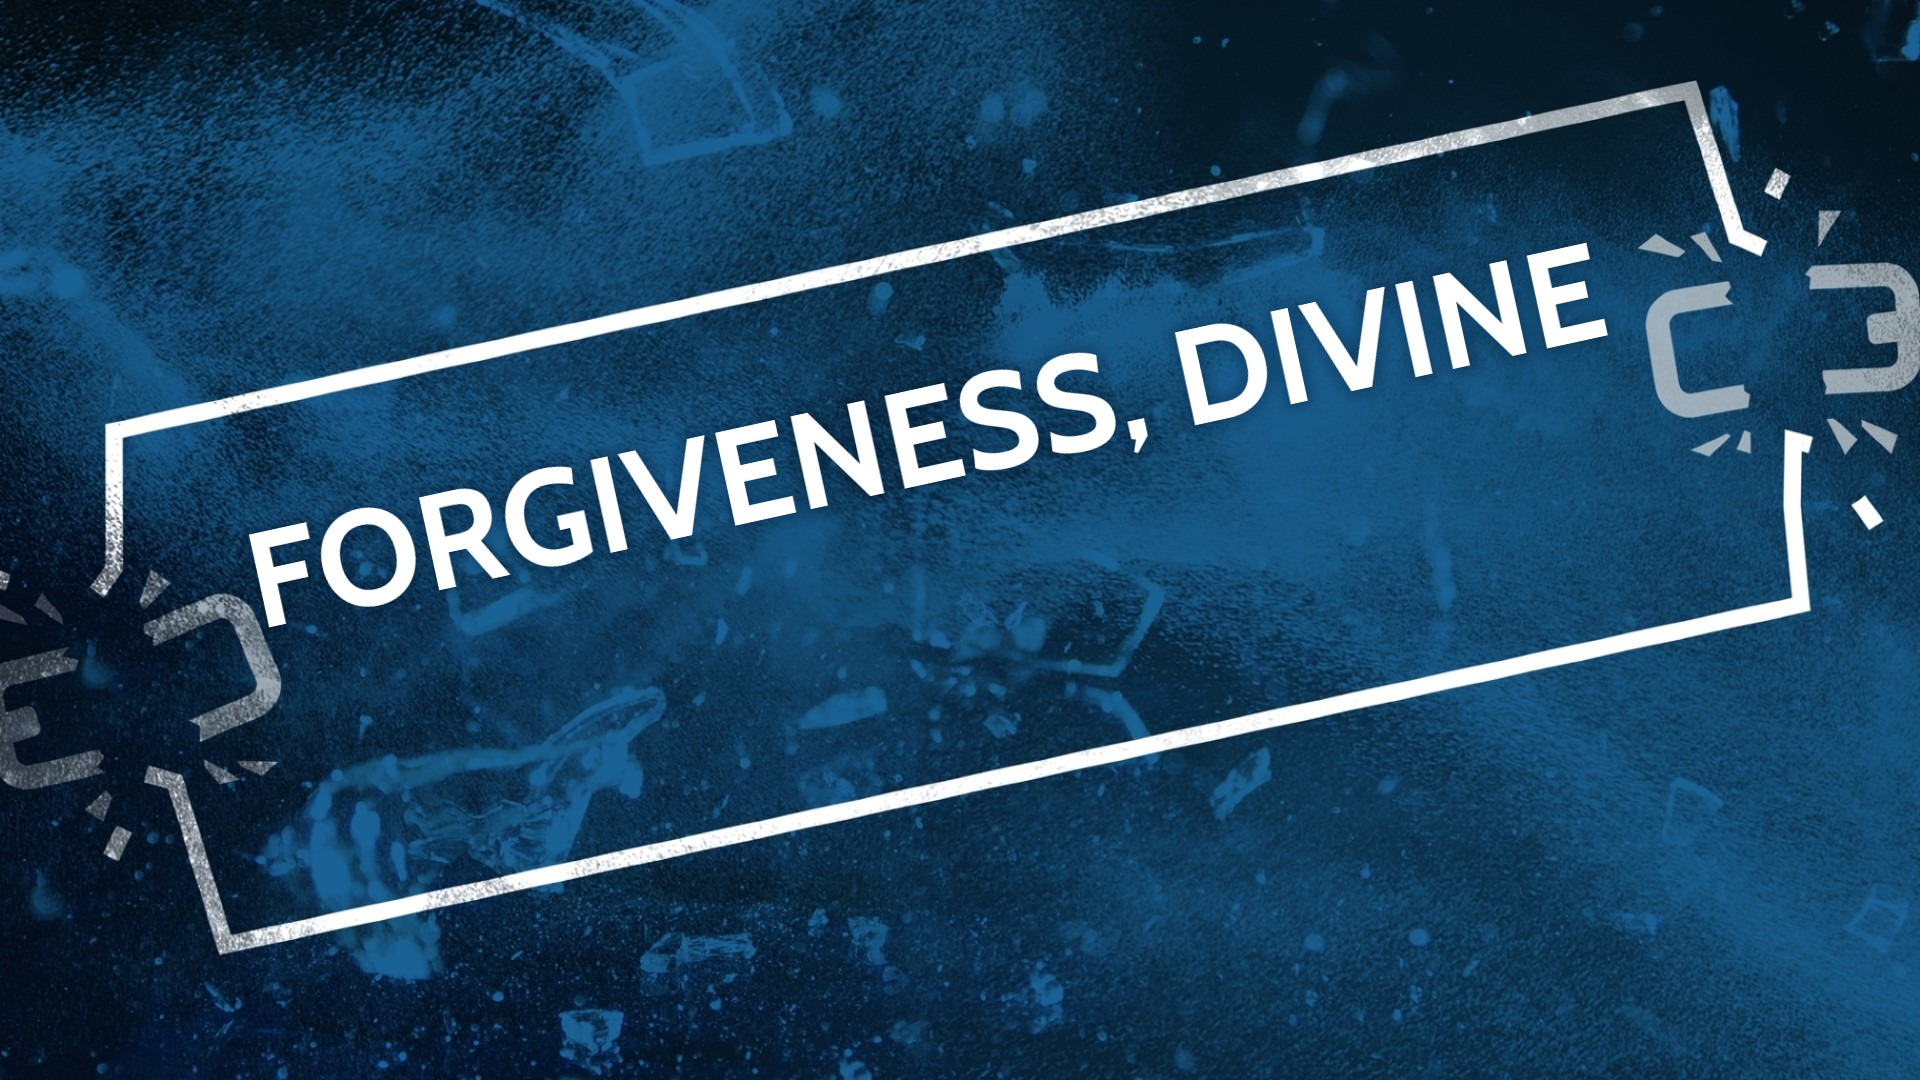 Forgiveness, divine